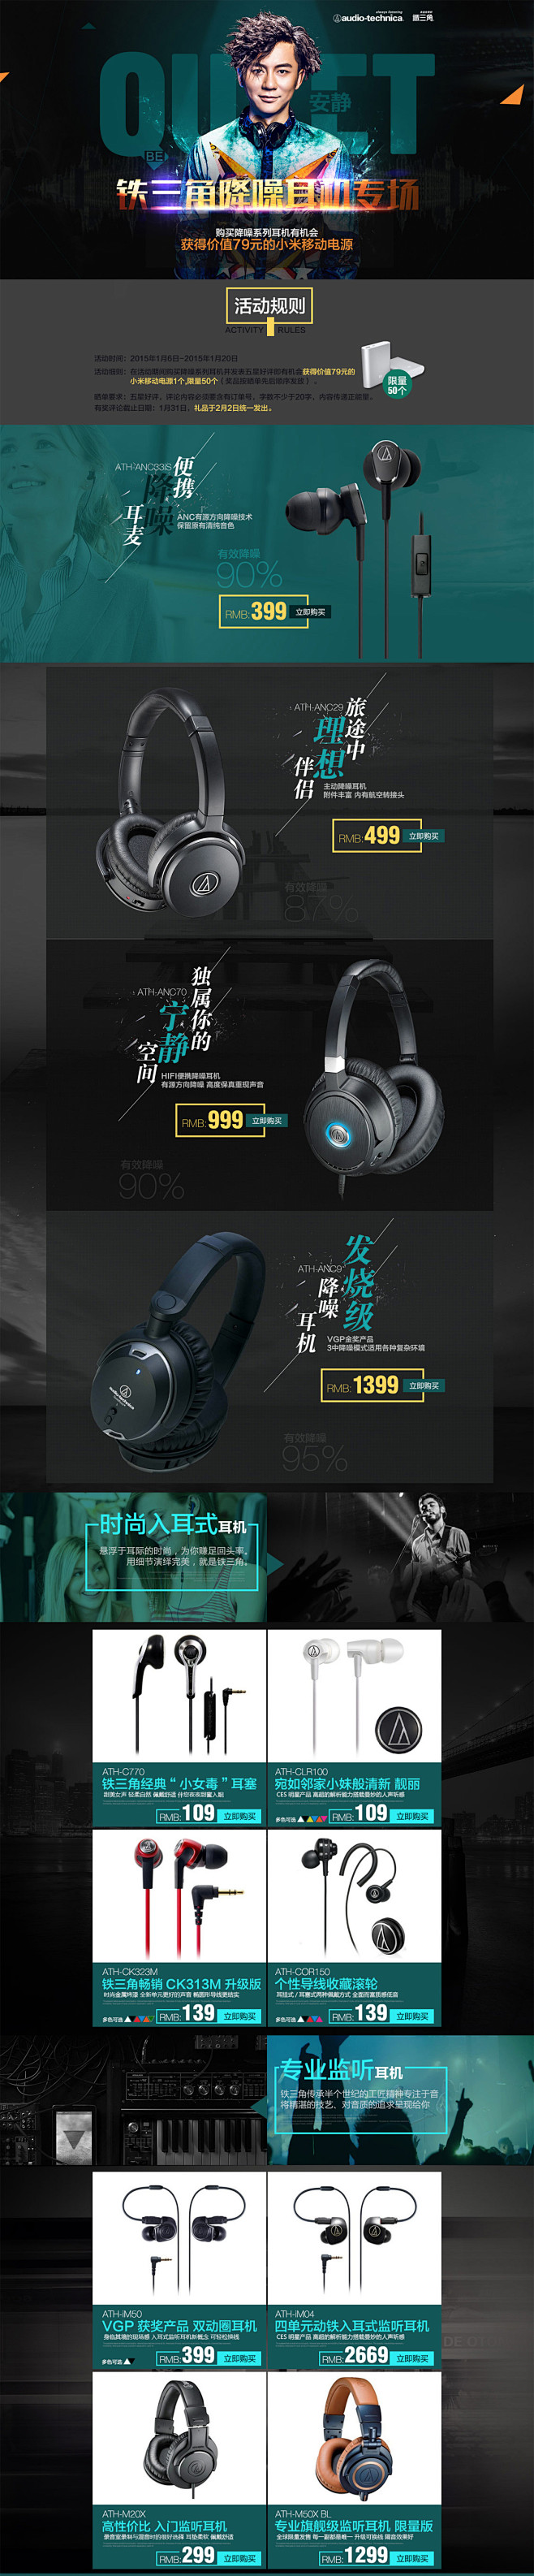 耳机产品专题七米设计 - WWW.7MS...